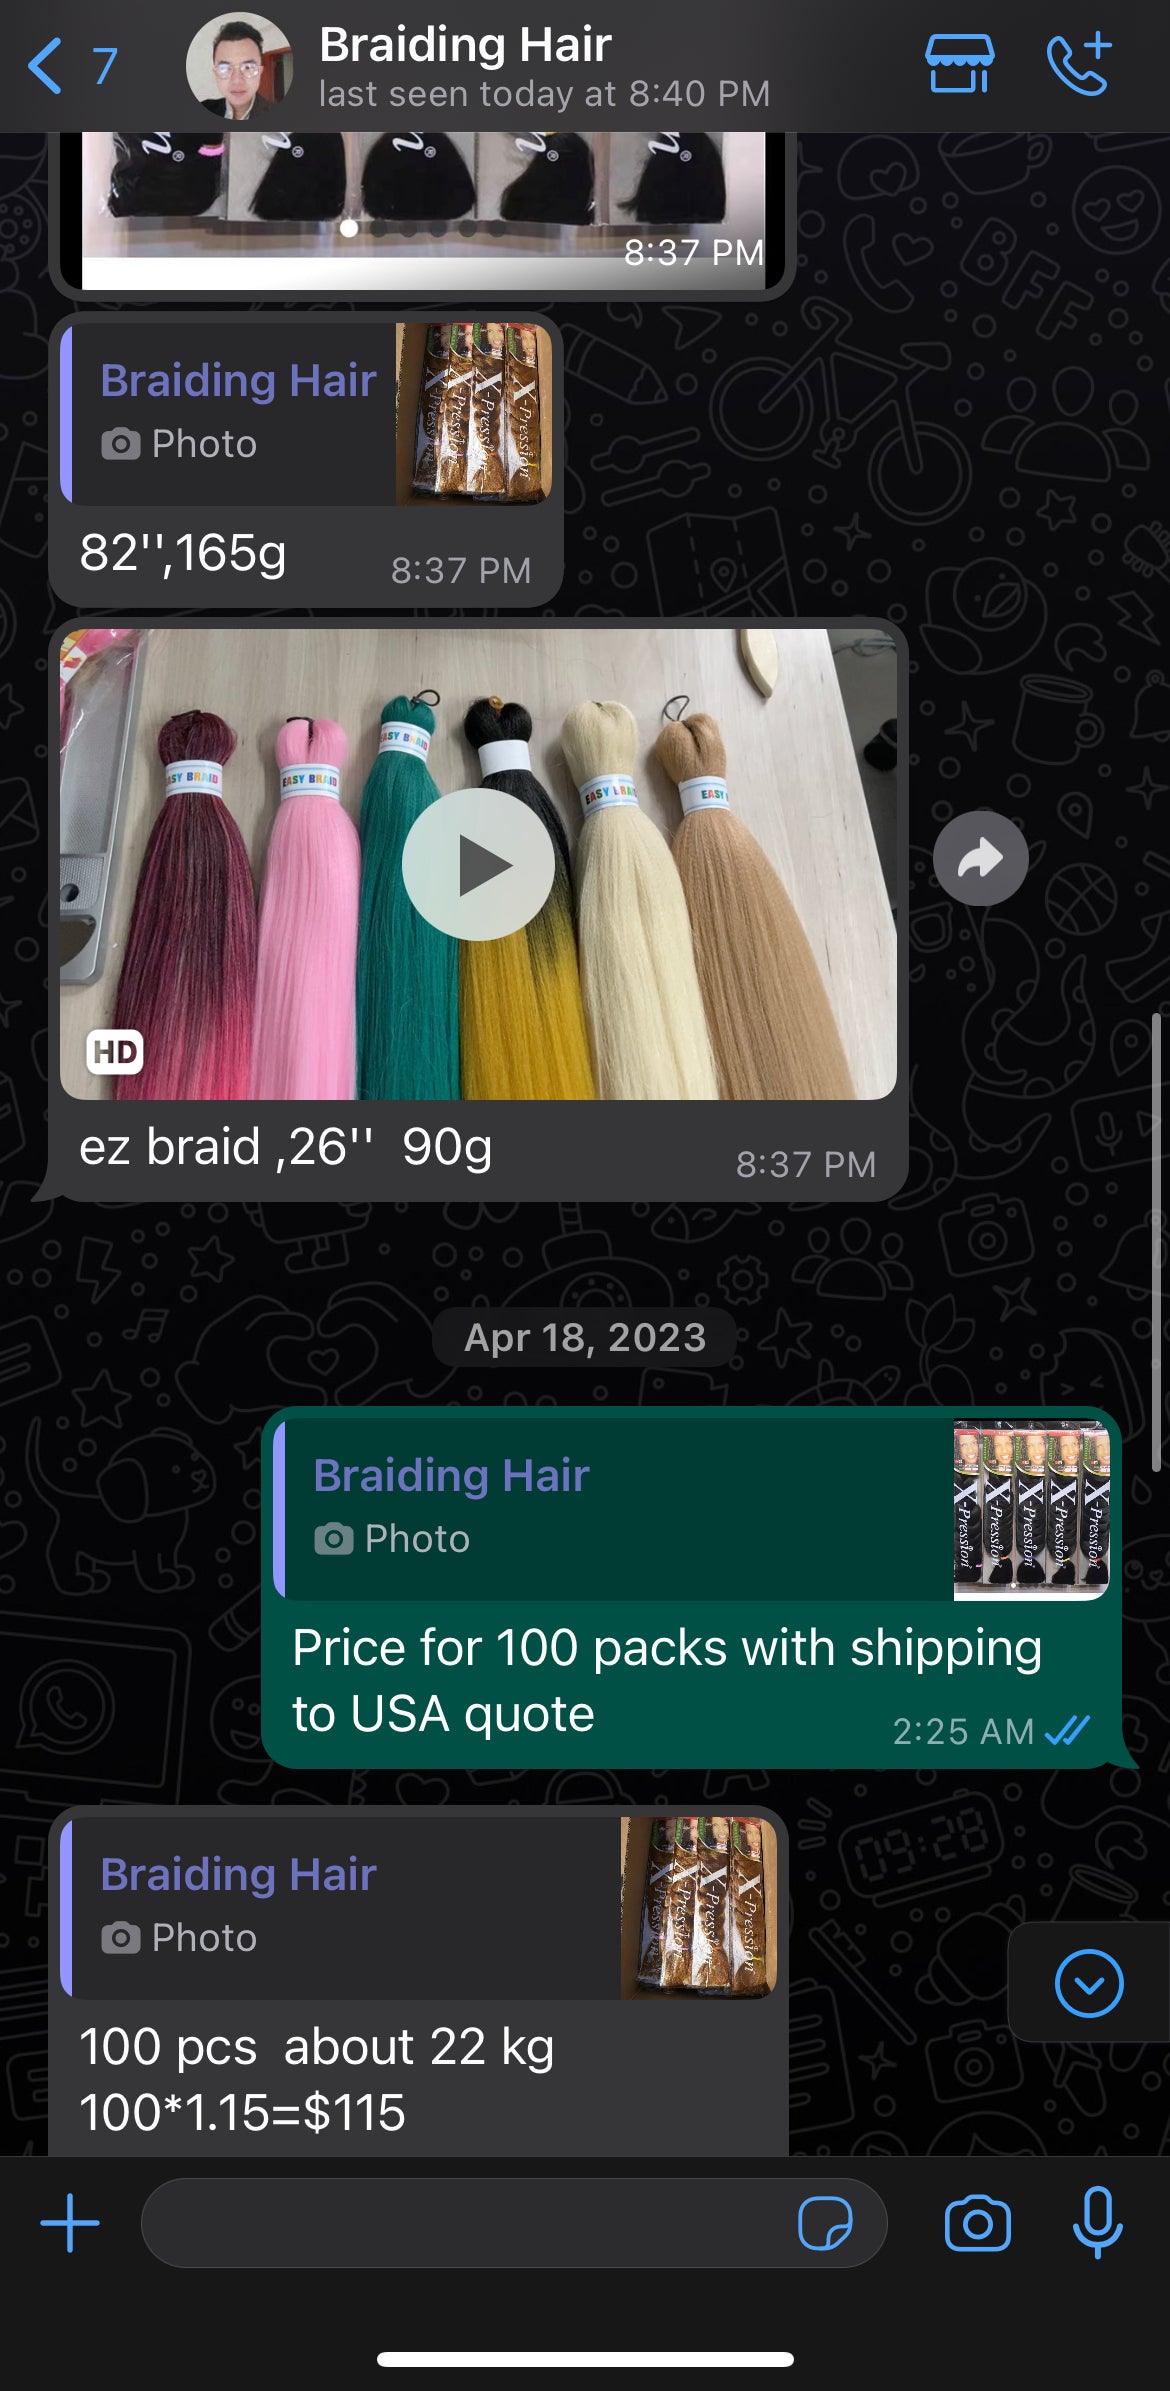 Braiding hair vendors list